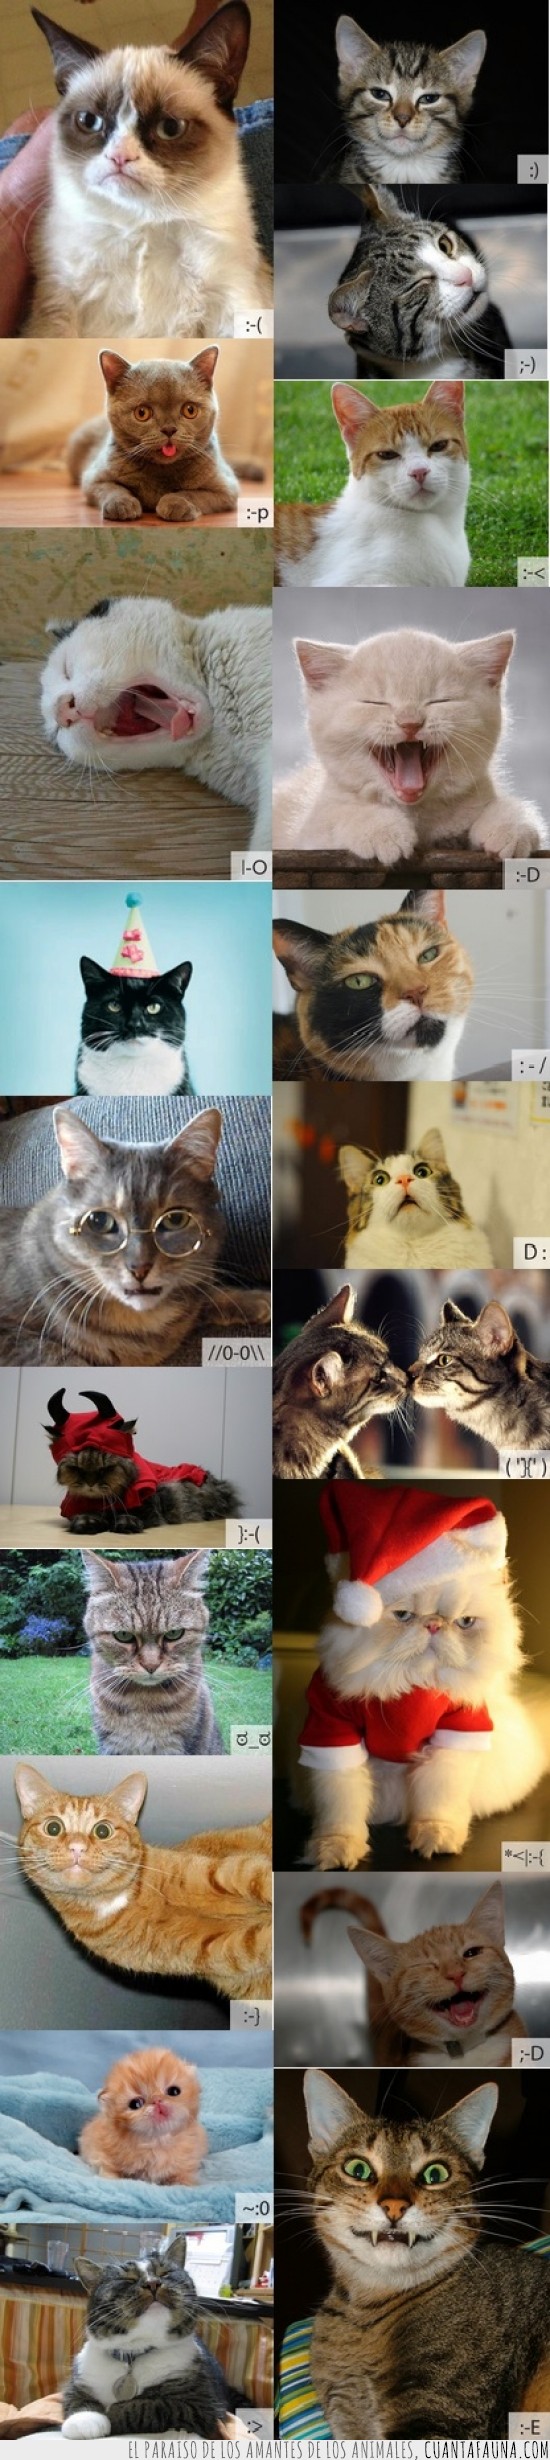 emoticonos,gatos,grumpy cat,adorables